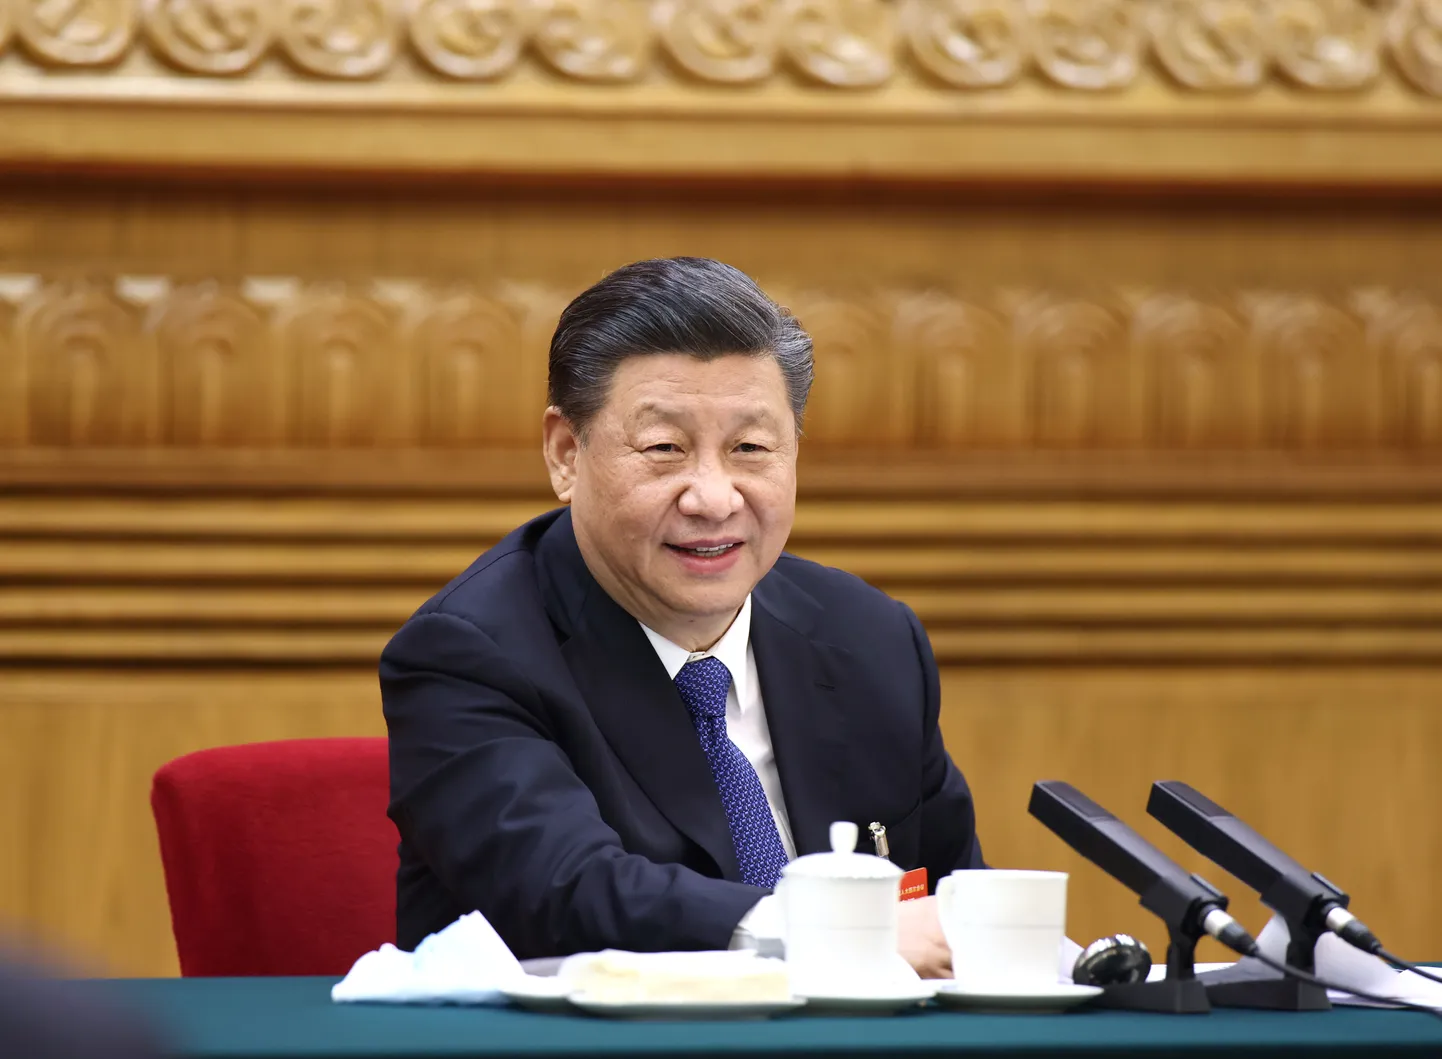 Hiina president Xi Jinping 5. märtsil rahvakongressil.